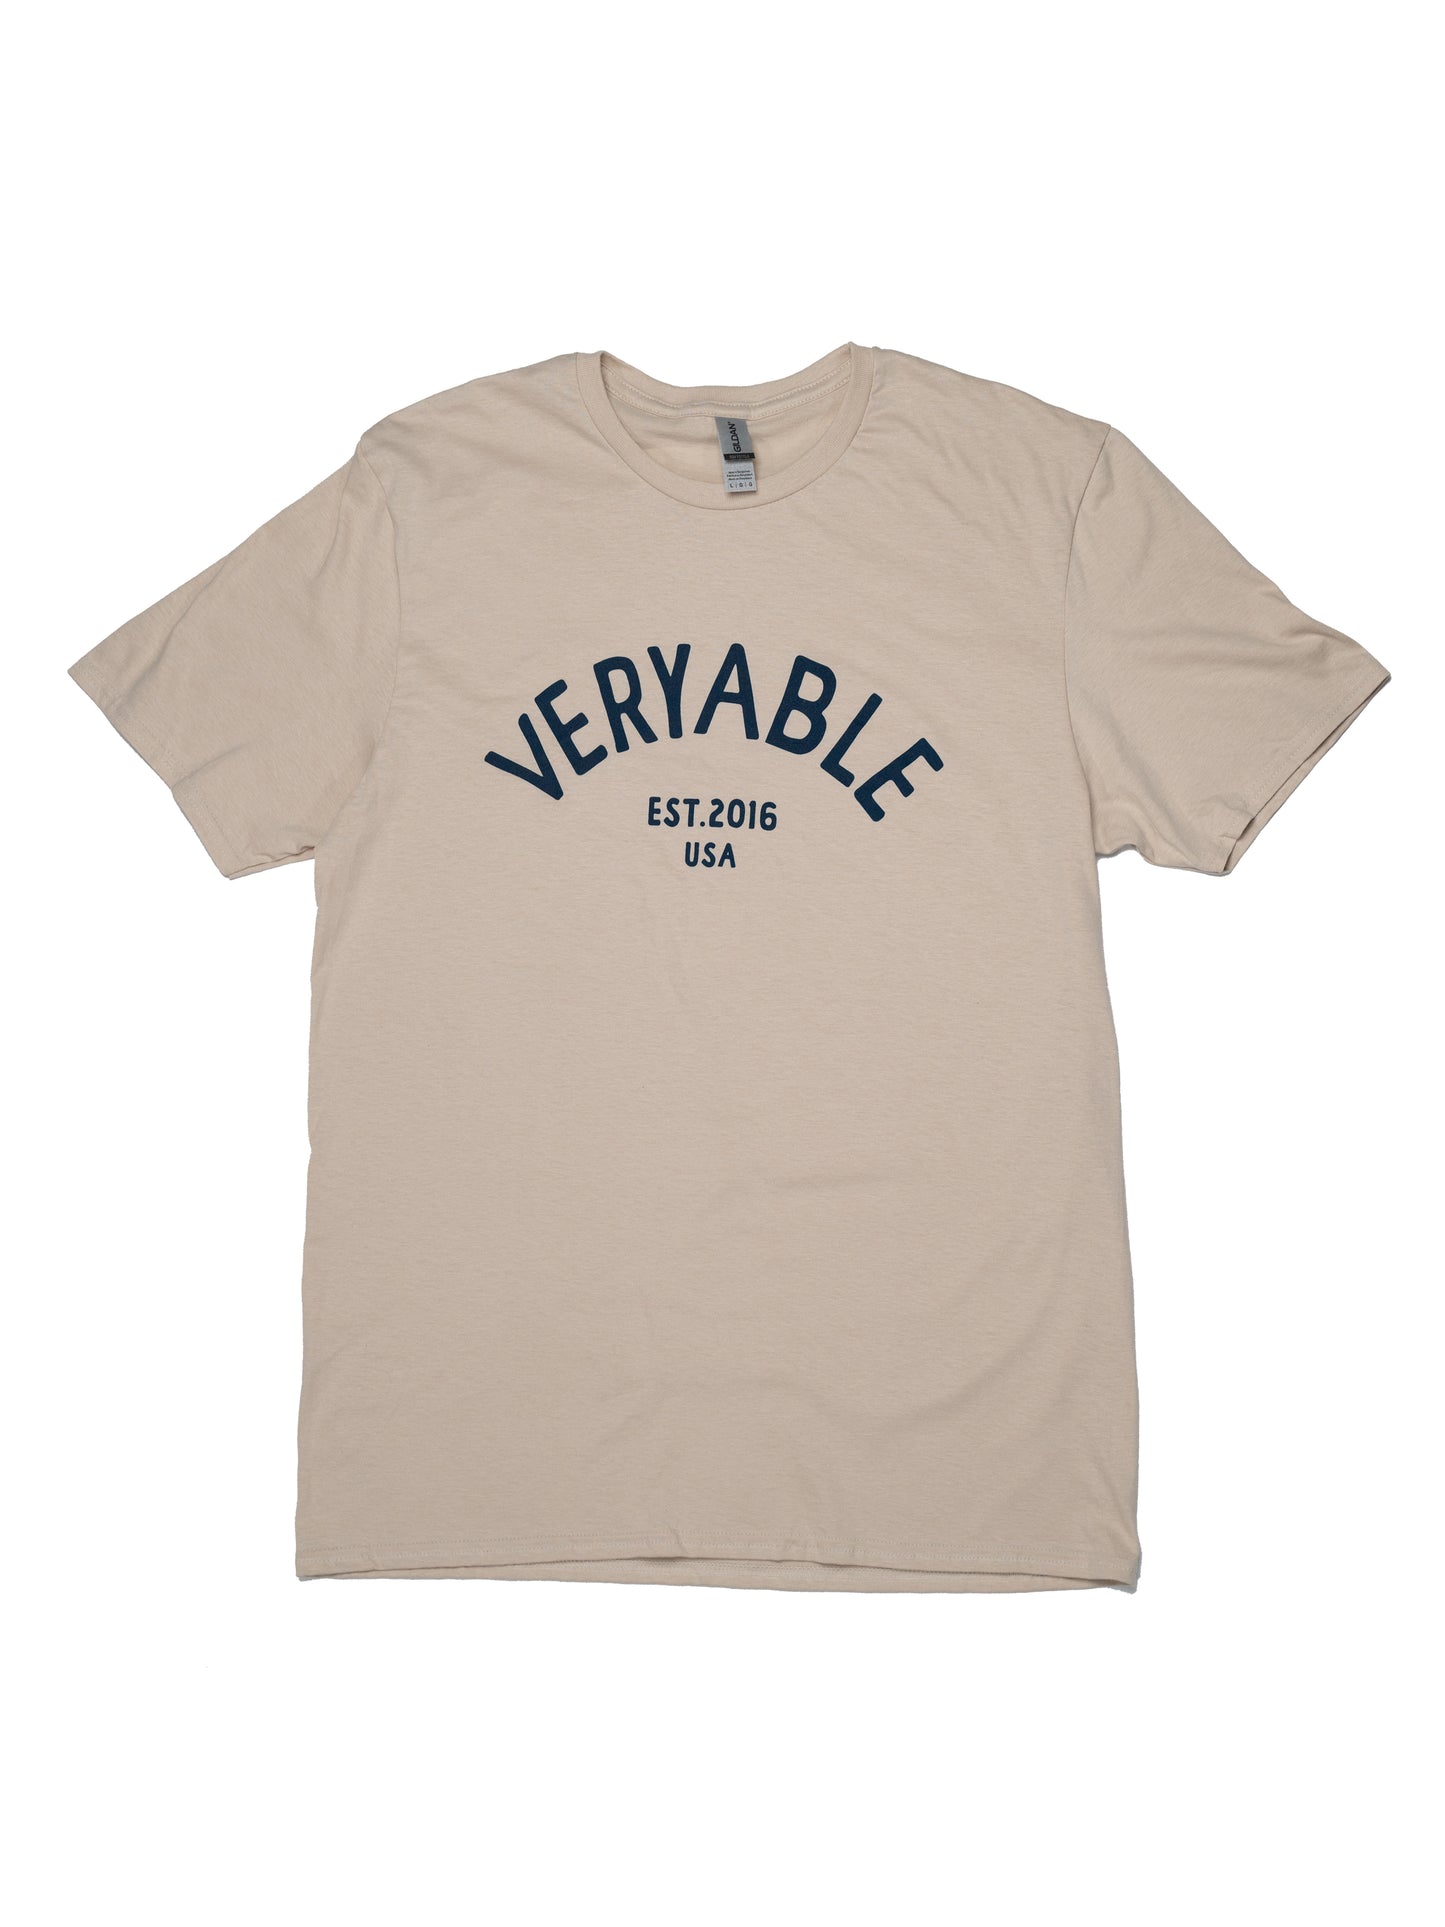 Veryable "Classic" T-Shirt